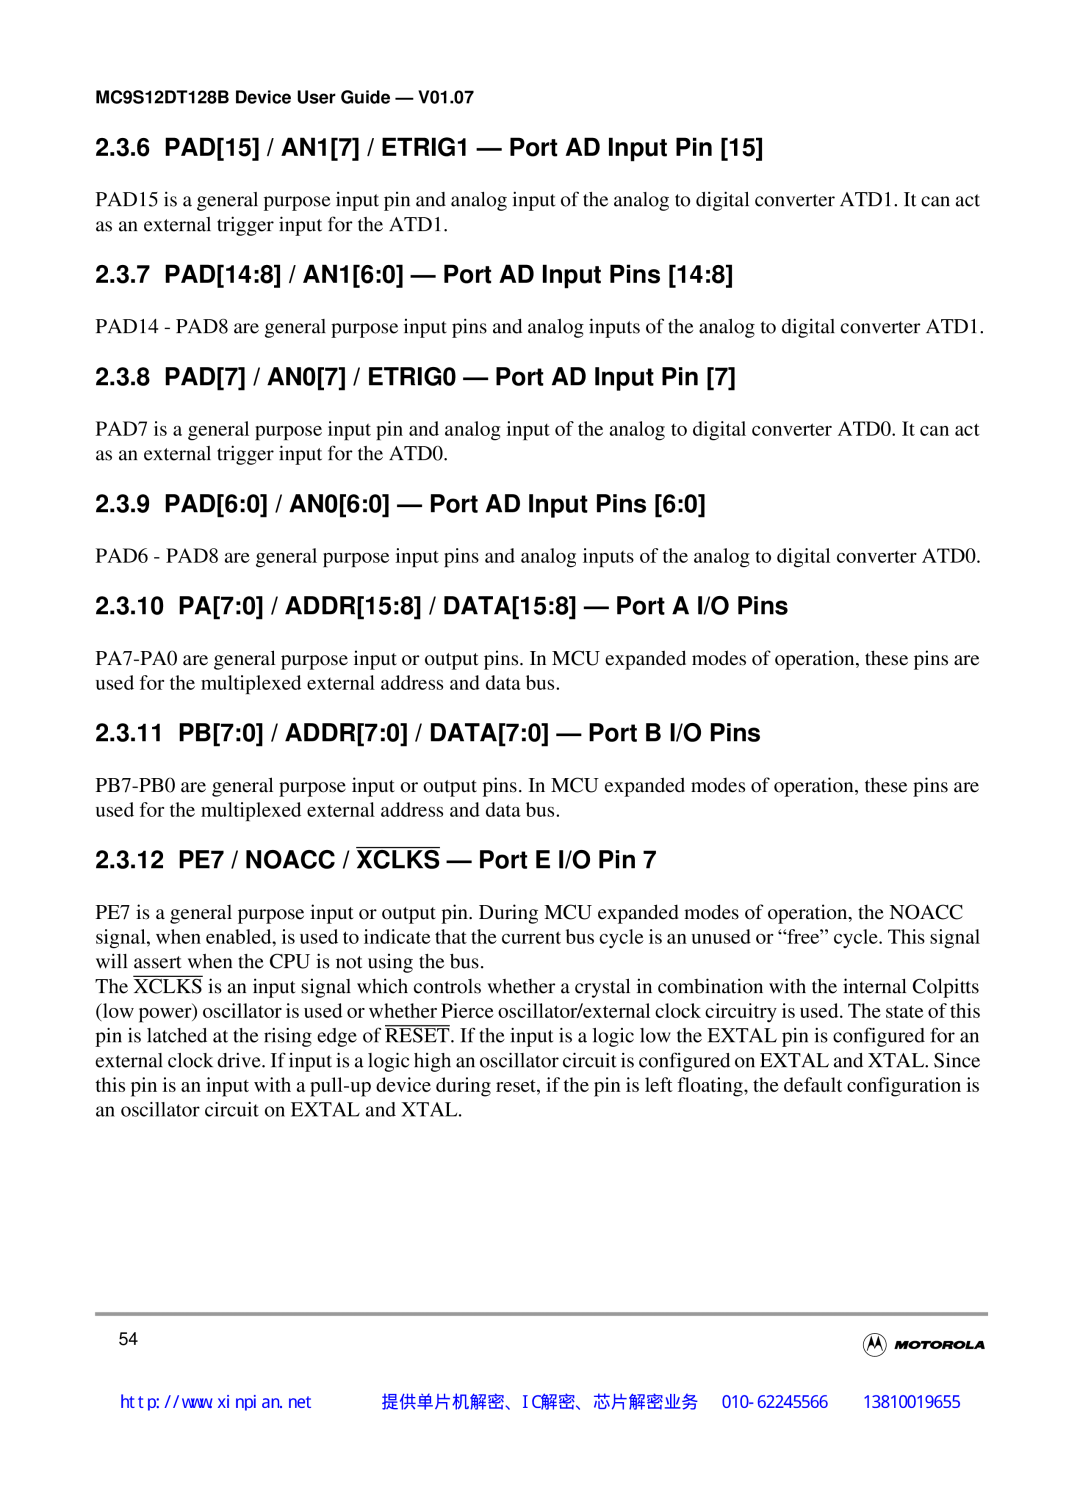 Motorola MC9S12DJ128B manual 2.3.6 PAD15 / AN17 / ETRIG1 - Port AD Input Pin, 2.3.7 PAD148 / AN160 - Port AD Input Pins 